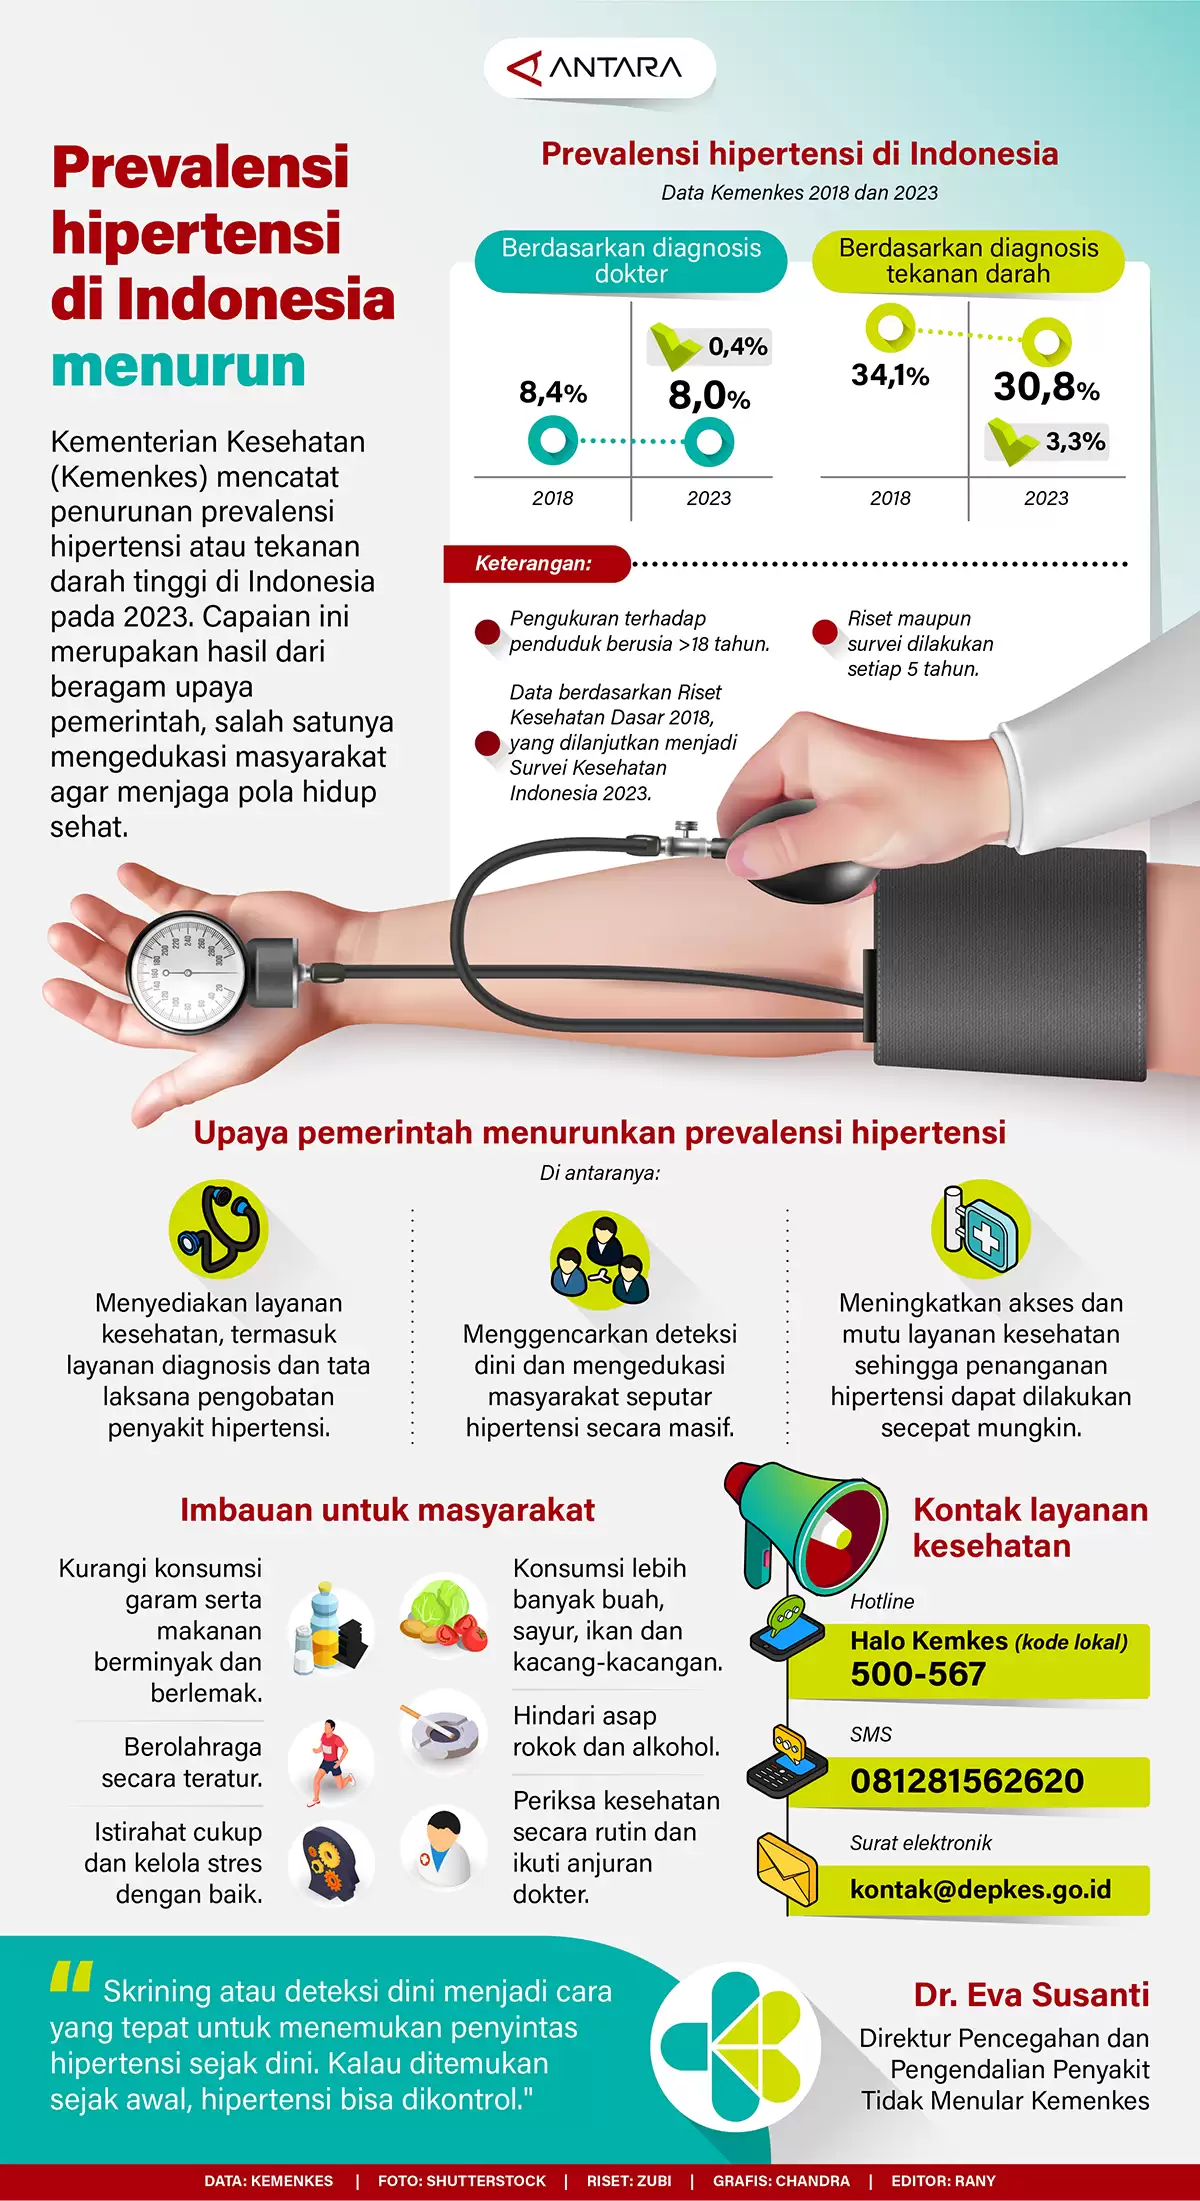 Prevalensi Hipertensi di Indonesia Menurun